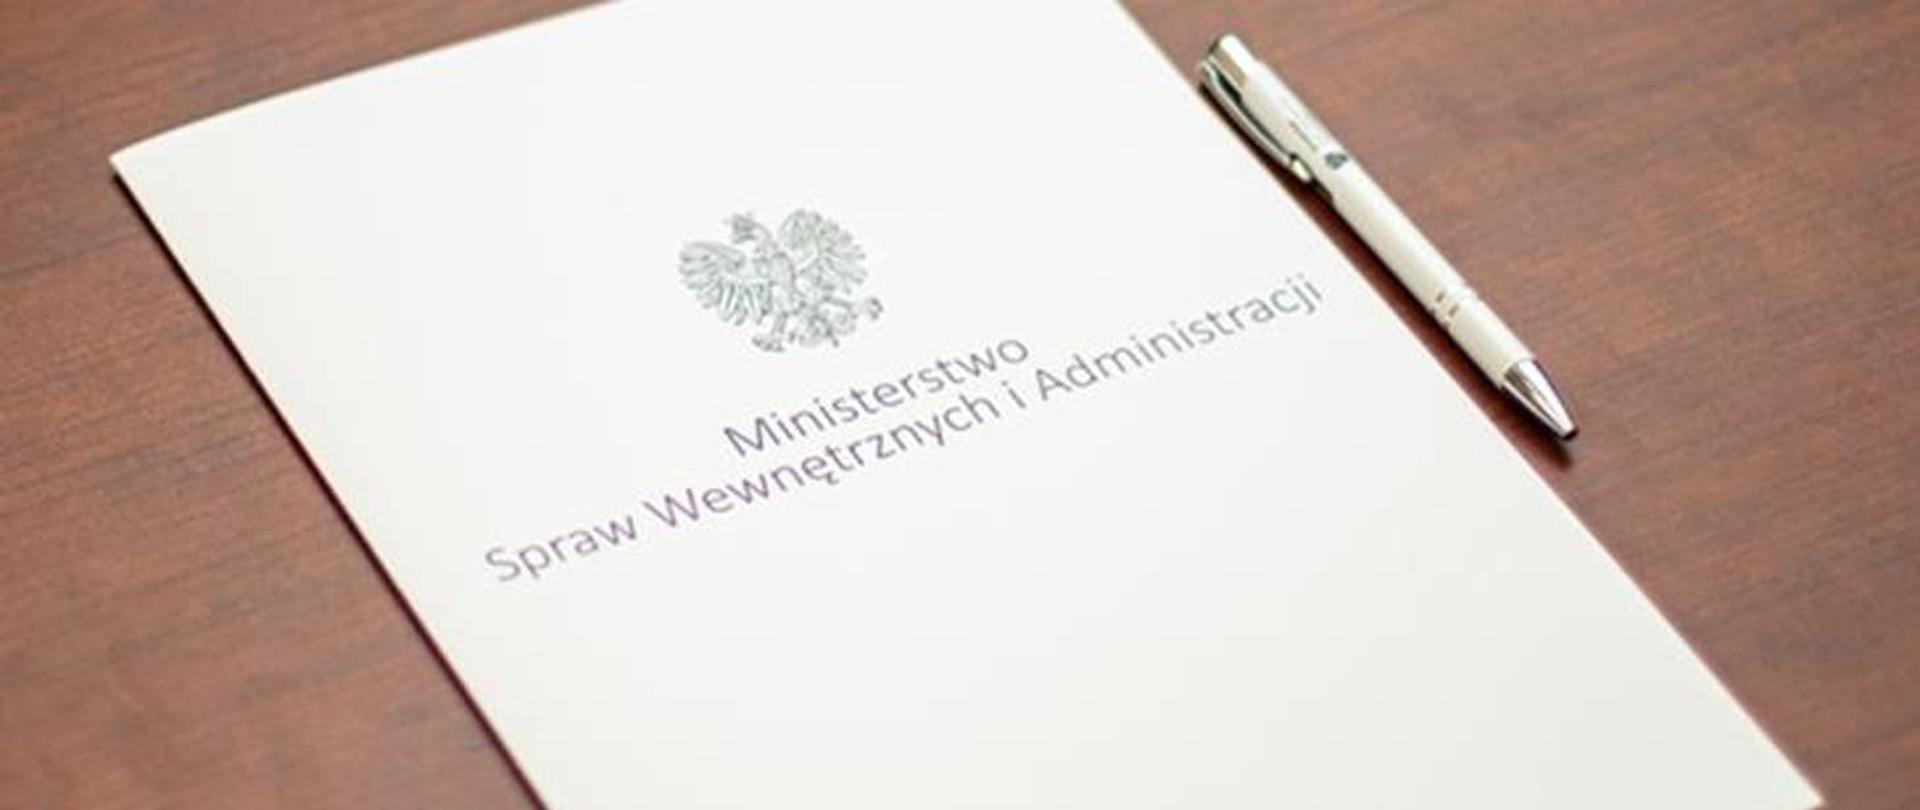 Na zdjęciu znajduje się teczka z napisem Ministerstwo Spraw Wewnętrznych i Administracji. Obok leży długopis.